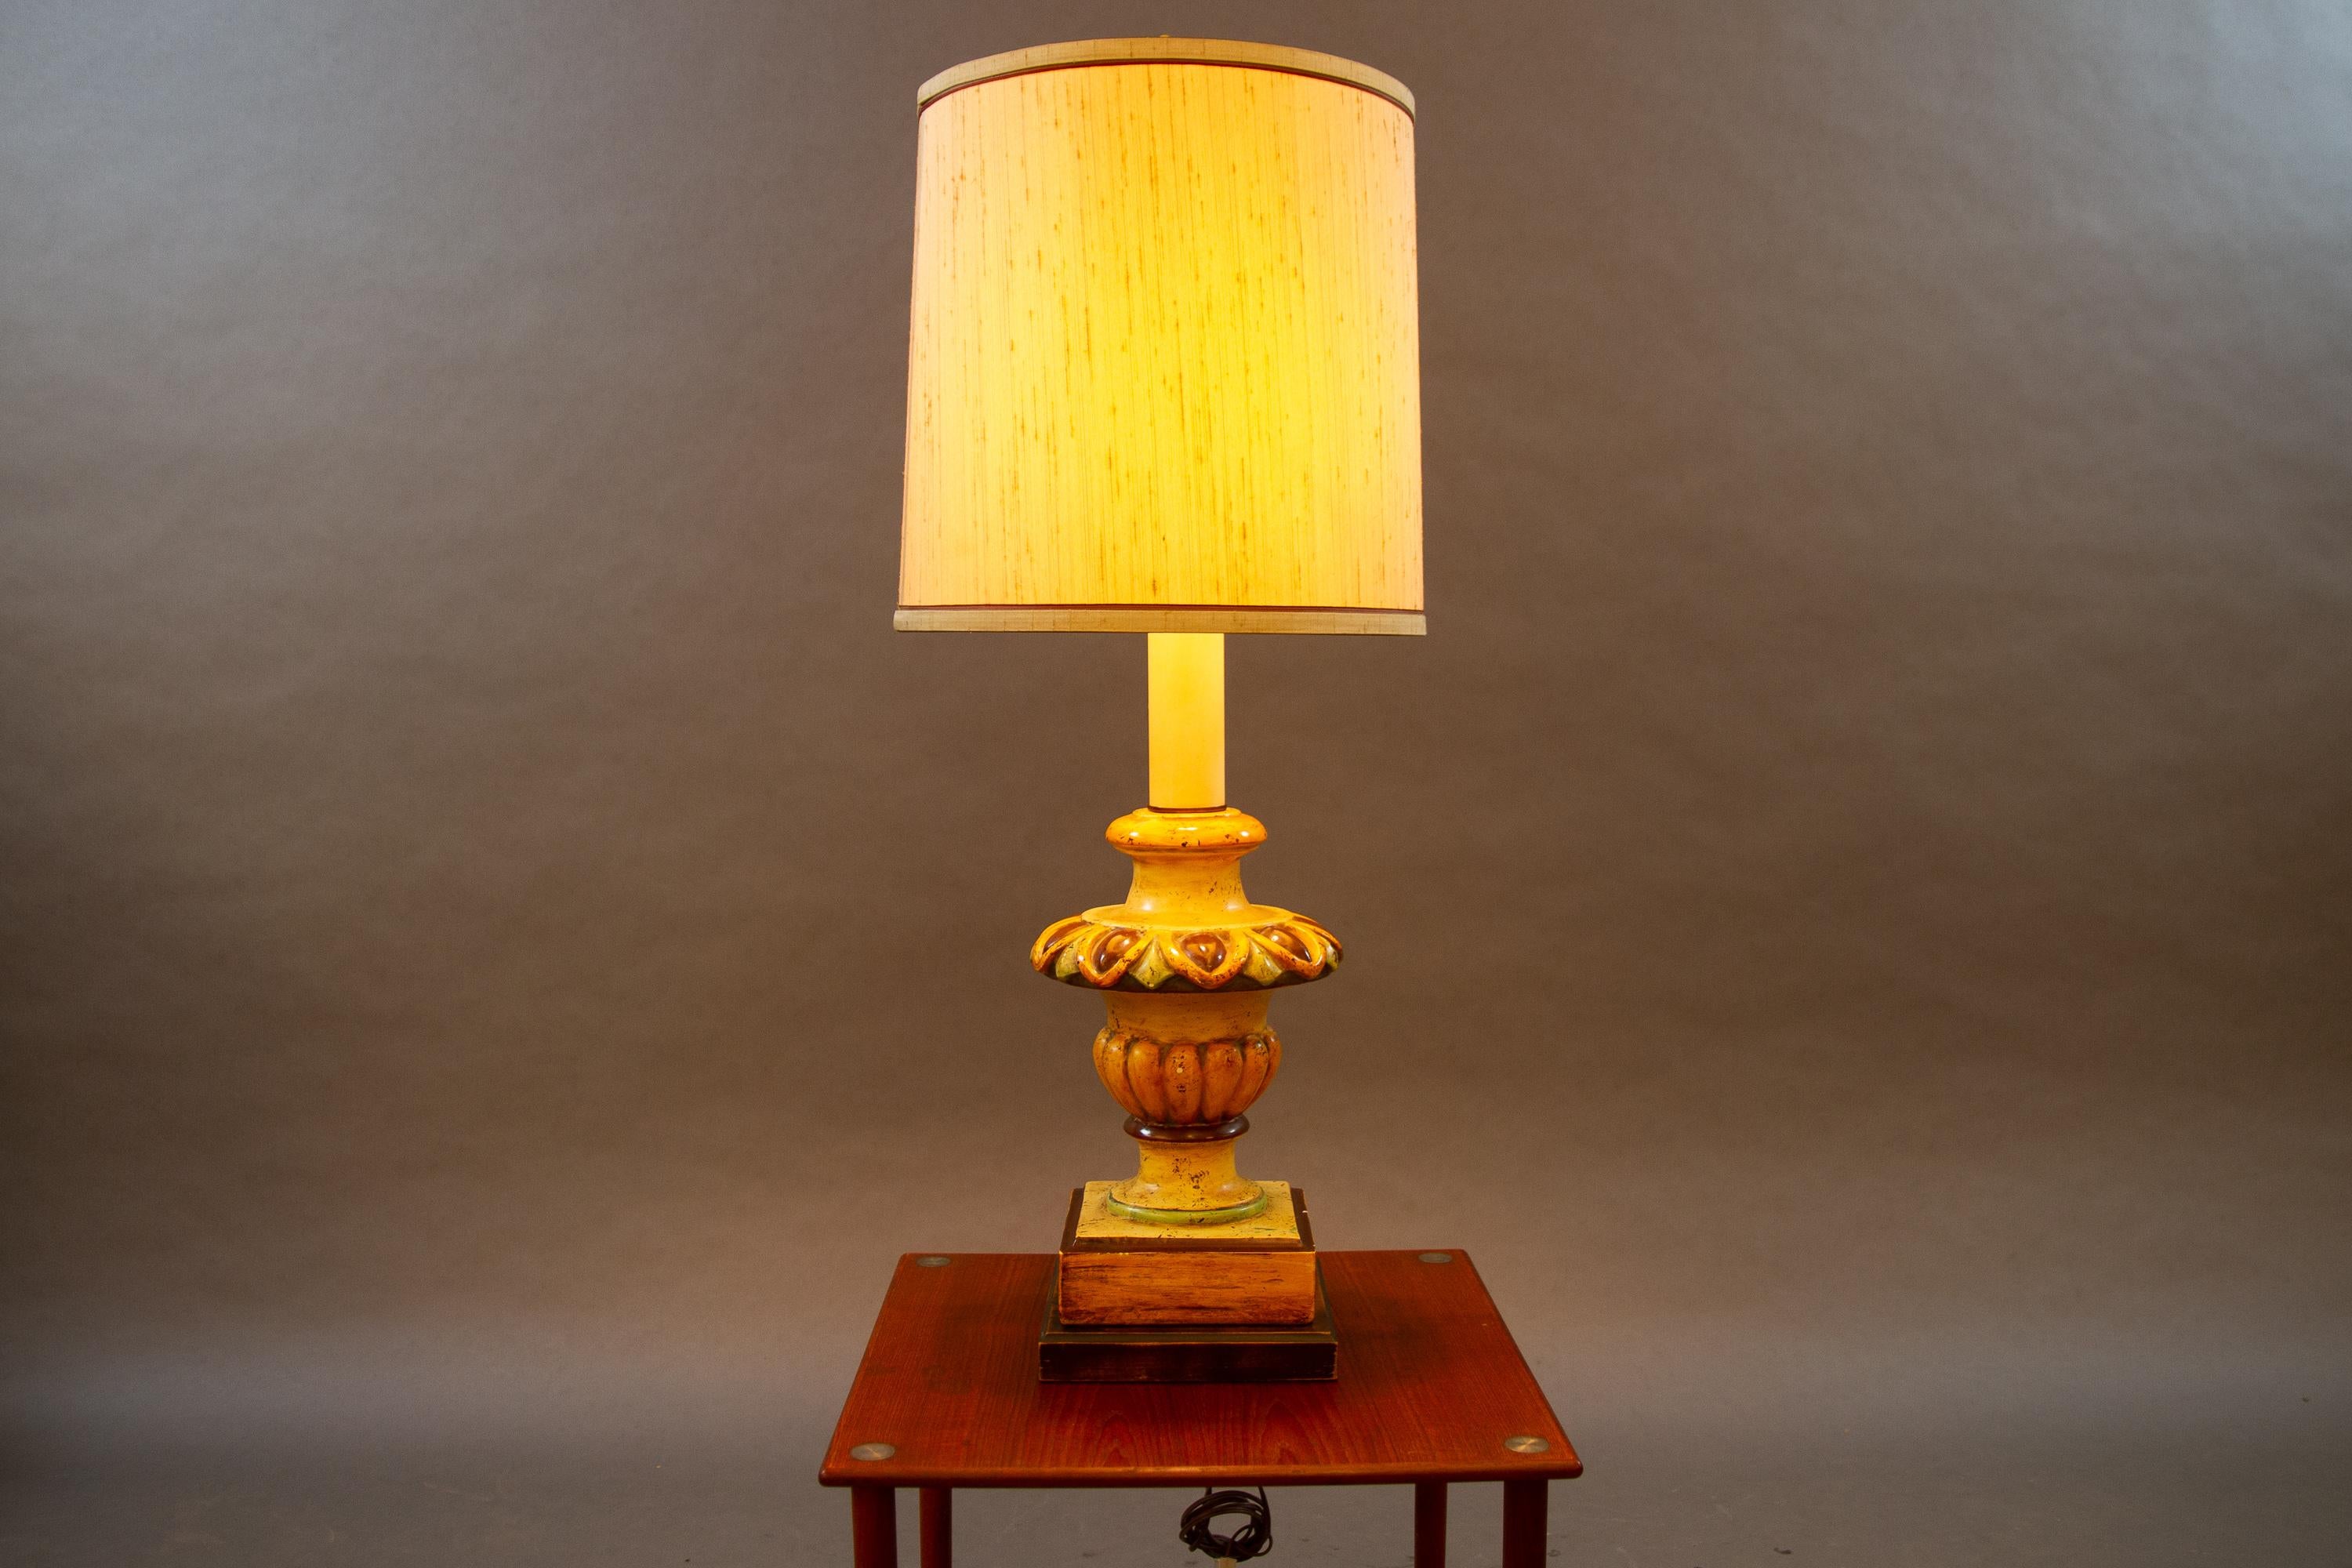 Lampe de table vintage Frederick cooper, années 1960
Grande lampe de table colorée avec un grand abat-jour original.
En état de marche. Petites entailles, veuillez voir les photos.